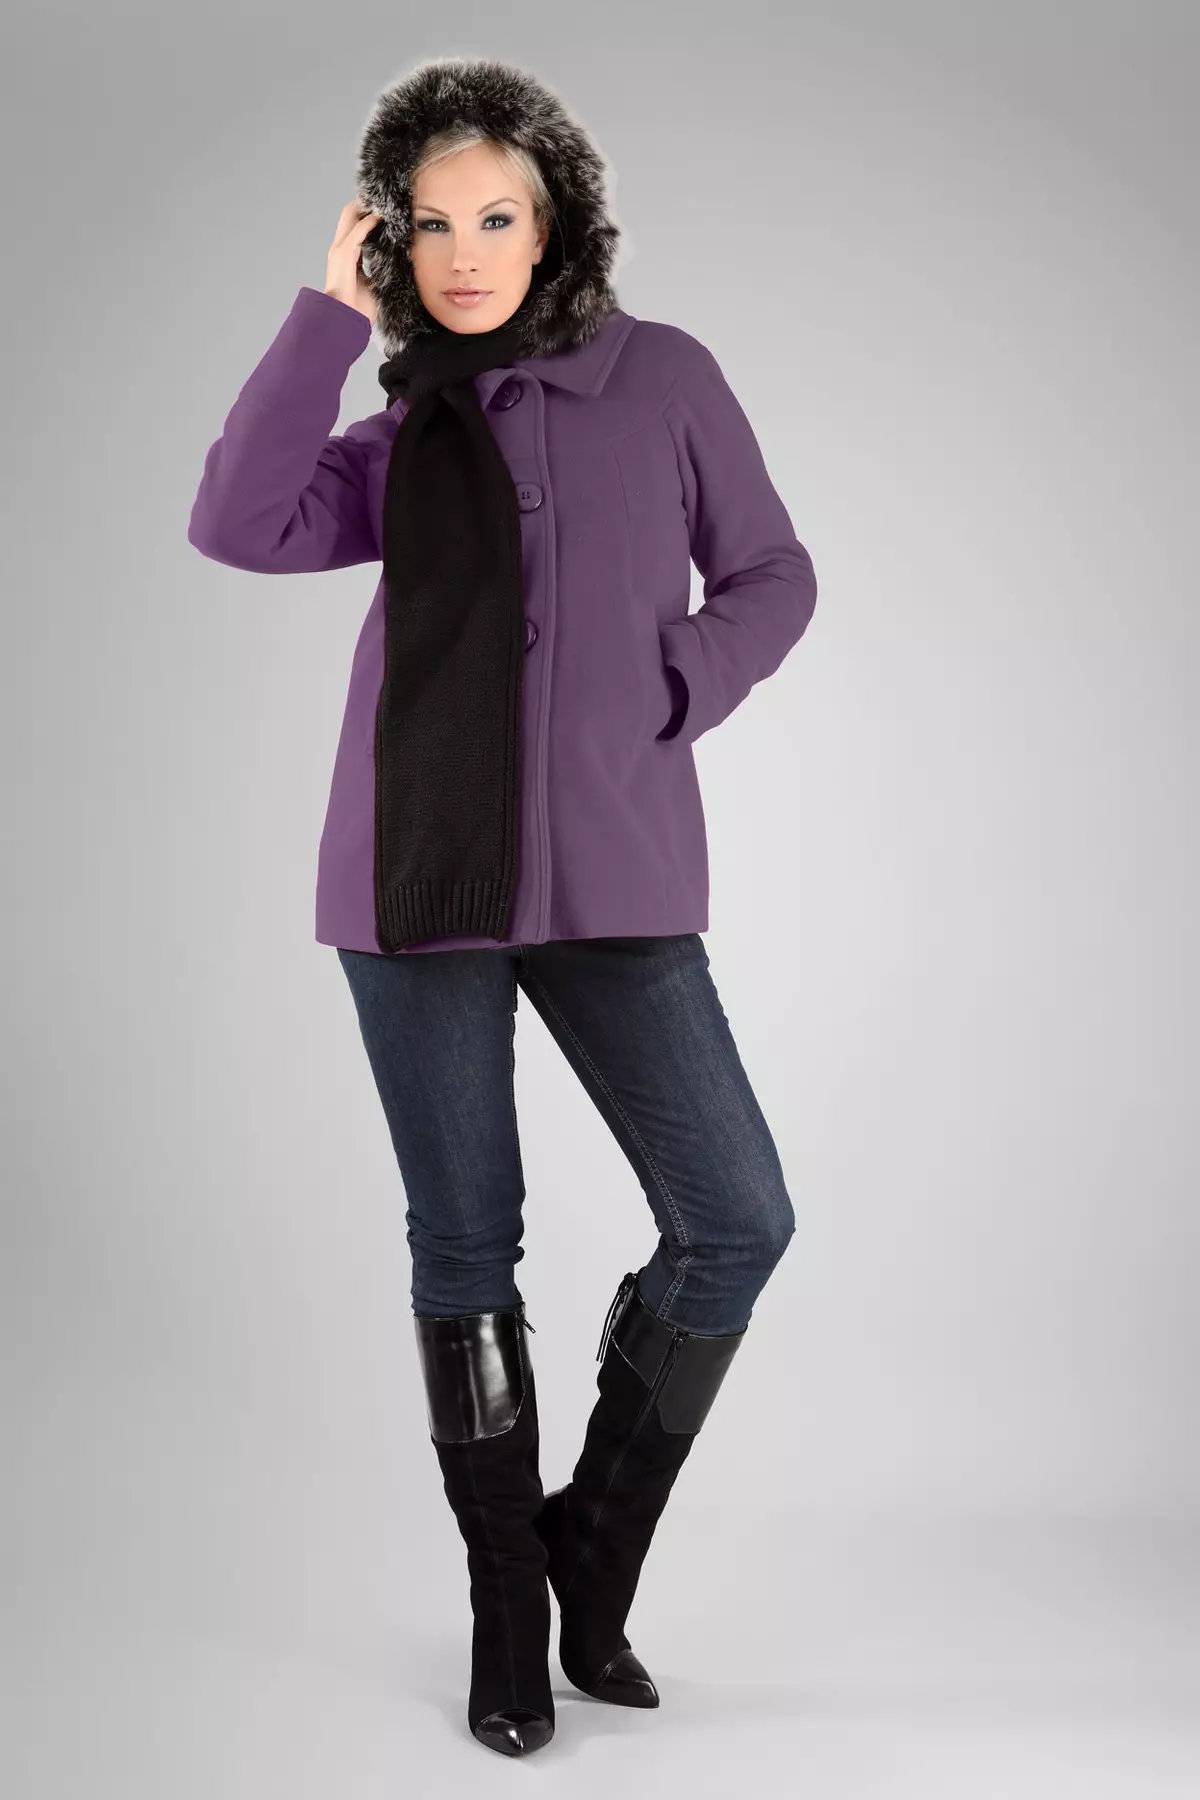 Ungu mantel (31 foto): mantel perempuan stylish dari warna ungu gelap, apa tas dan aksesoris lainnya untuk itu cocok 494_24